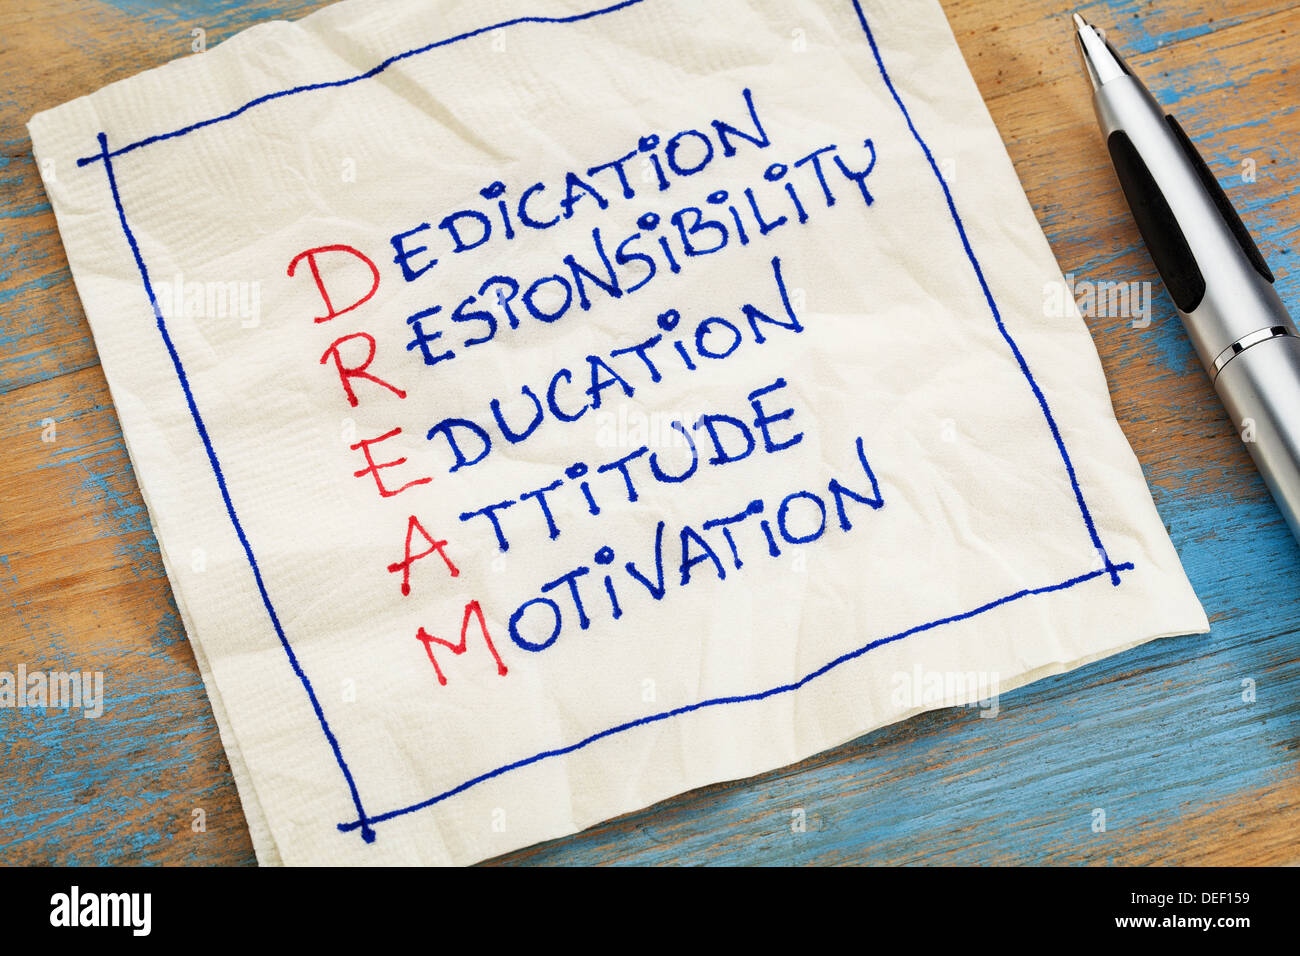 Engagement, Verantwortung, Ausbildung, Einstellung, Motivation - Traum Akronym - eine Serviette Doodle Stockfoto